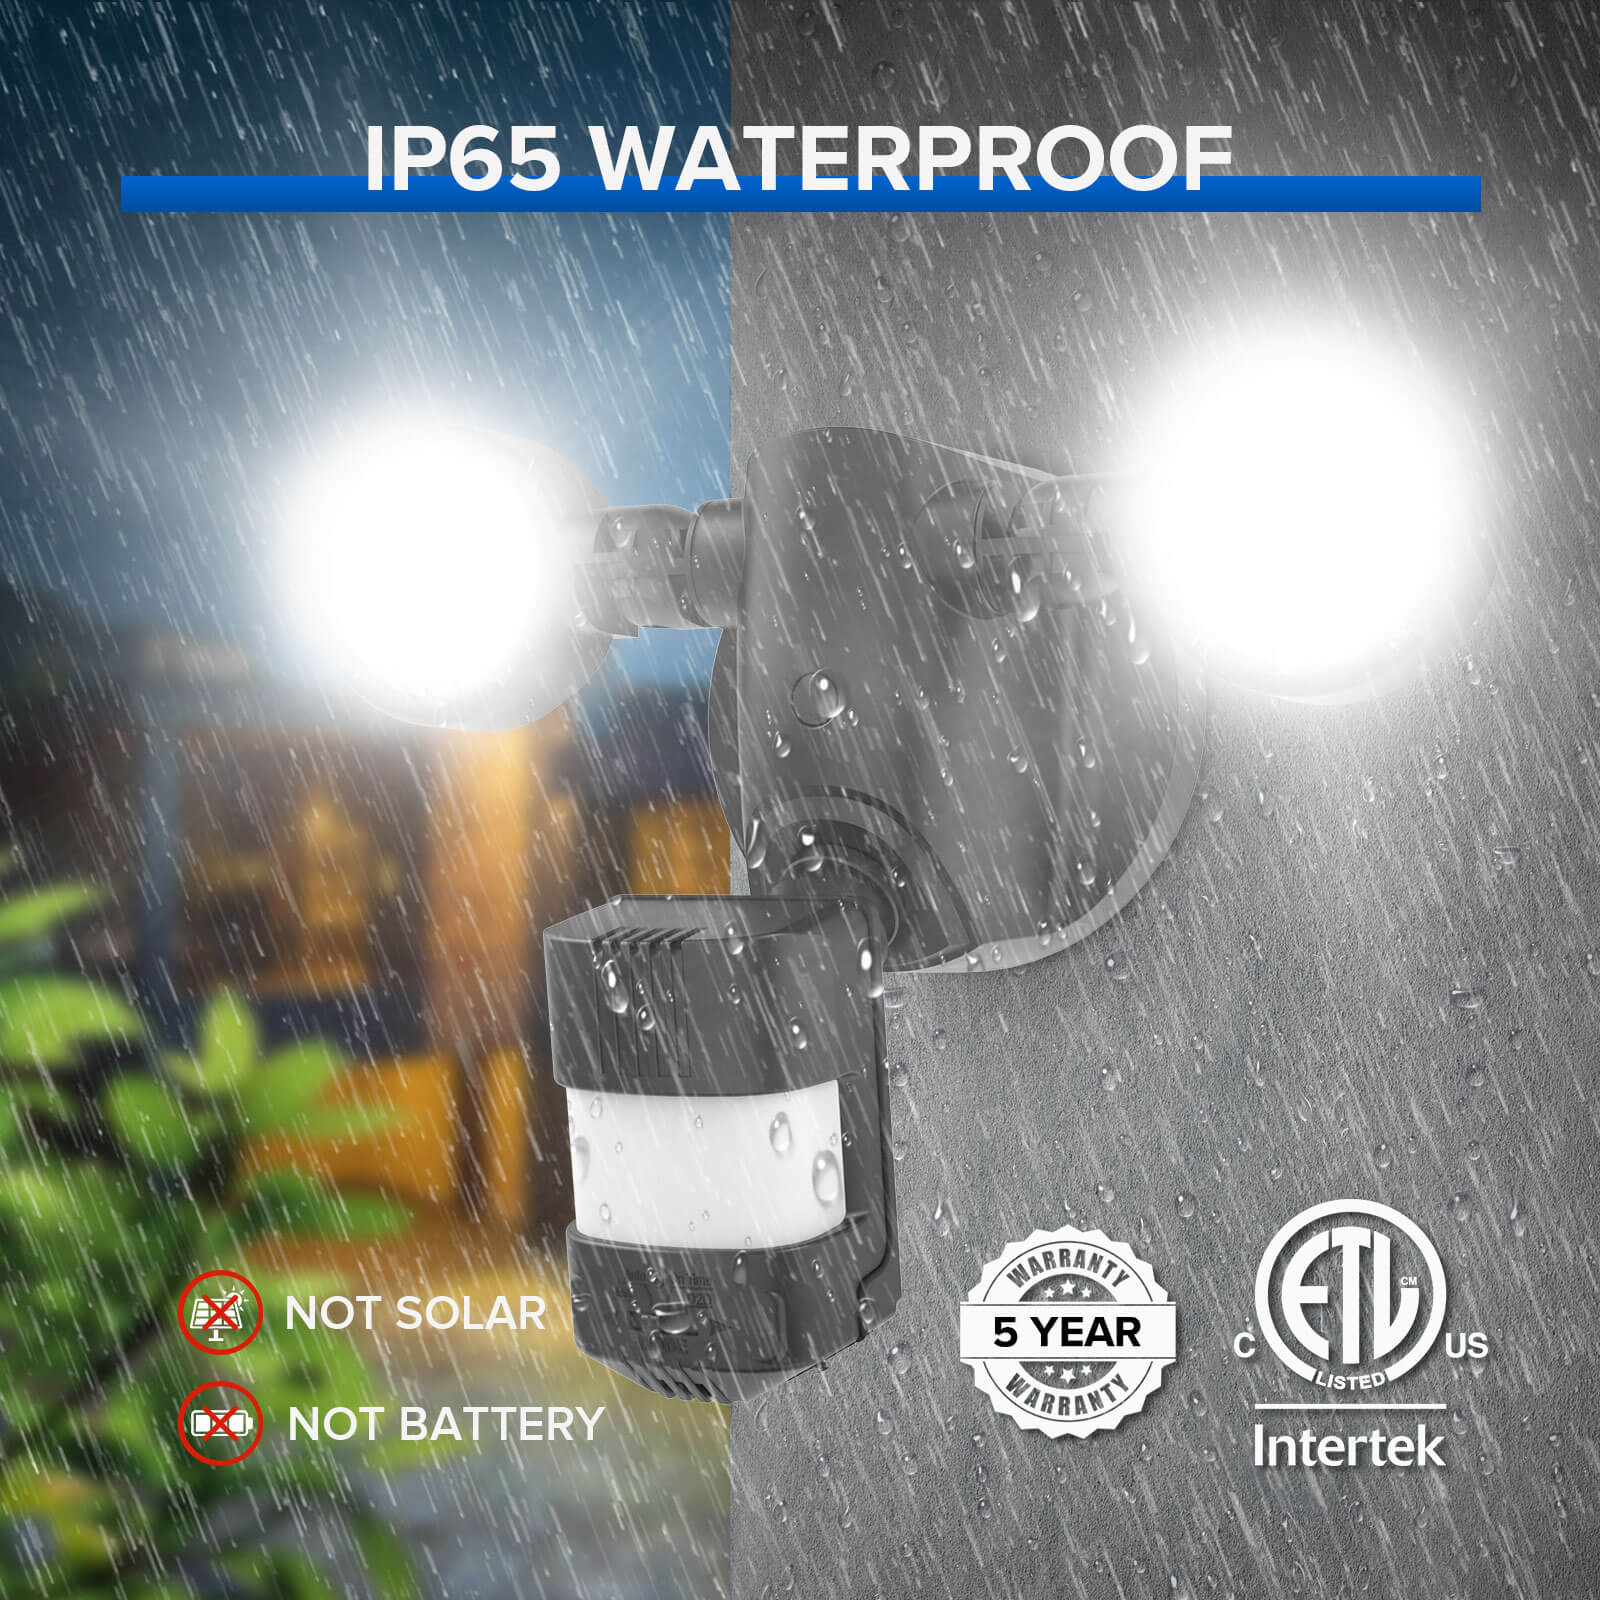 25W LED Security Light (Dusk to Dawn & Motion Sensor), IP65 waterproof, not solar, not battery, 5-year warranty, ELT certificate